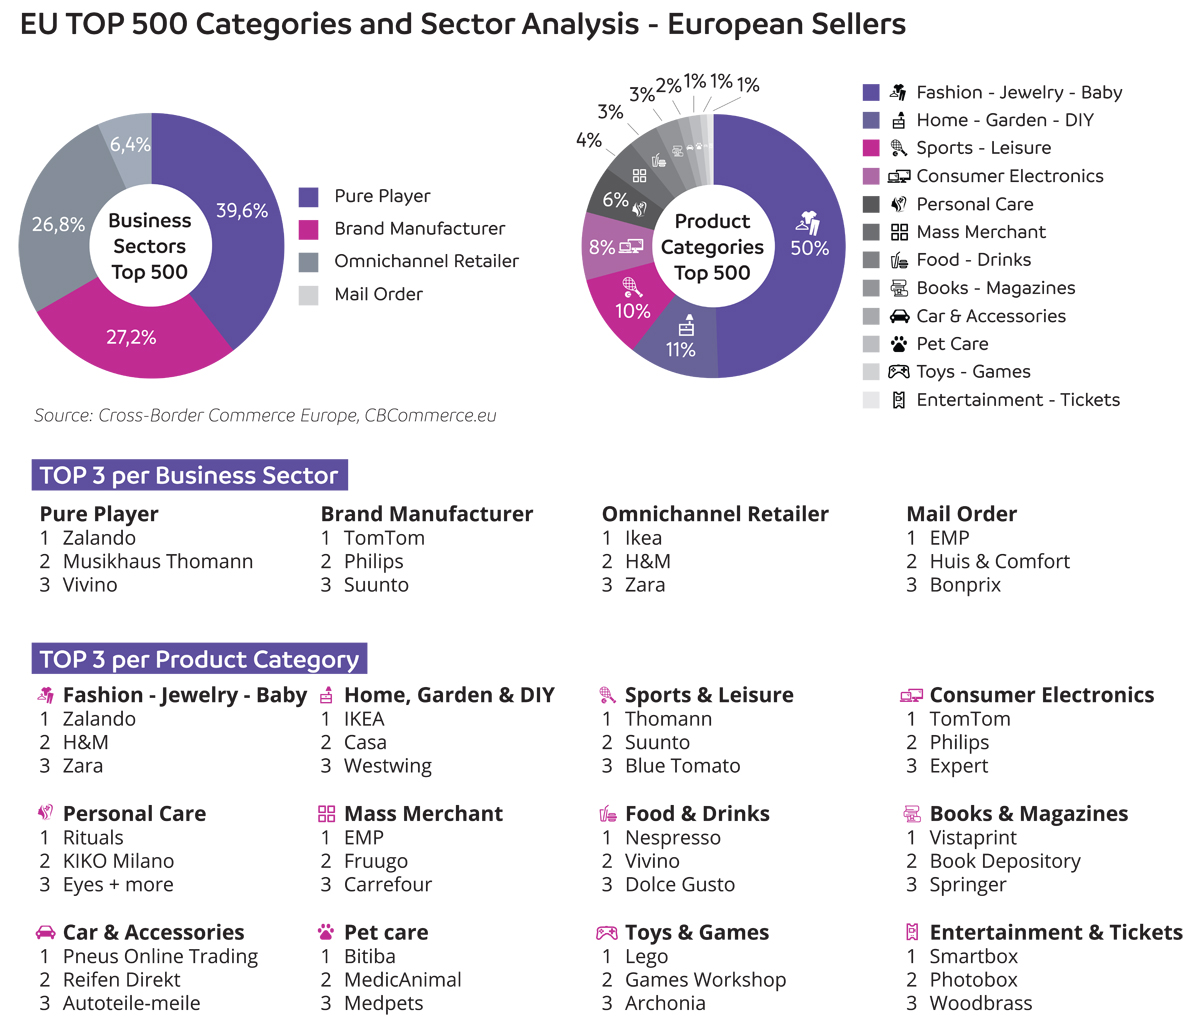 EU Top 500 Categories and Sectors